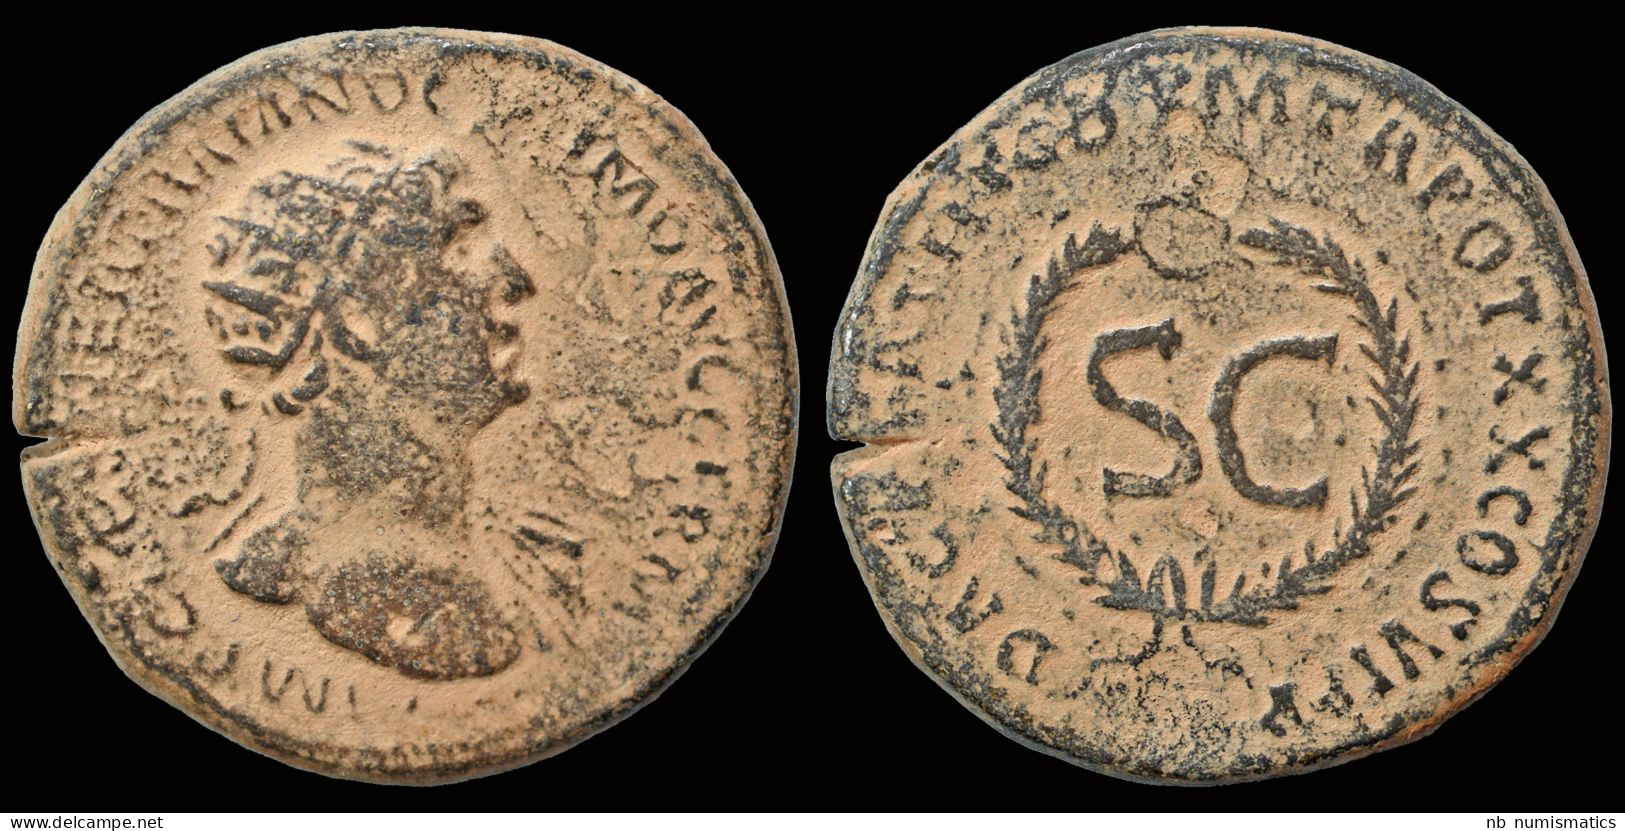 Trajan AE As  S C In Wreath-Rare! - La Dinastía Antonina (96 / 192)